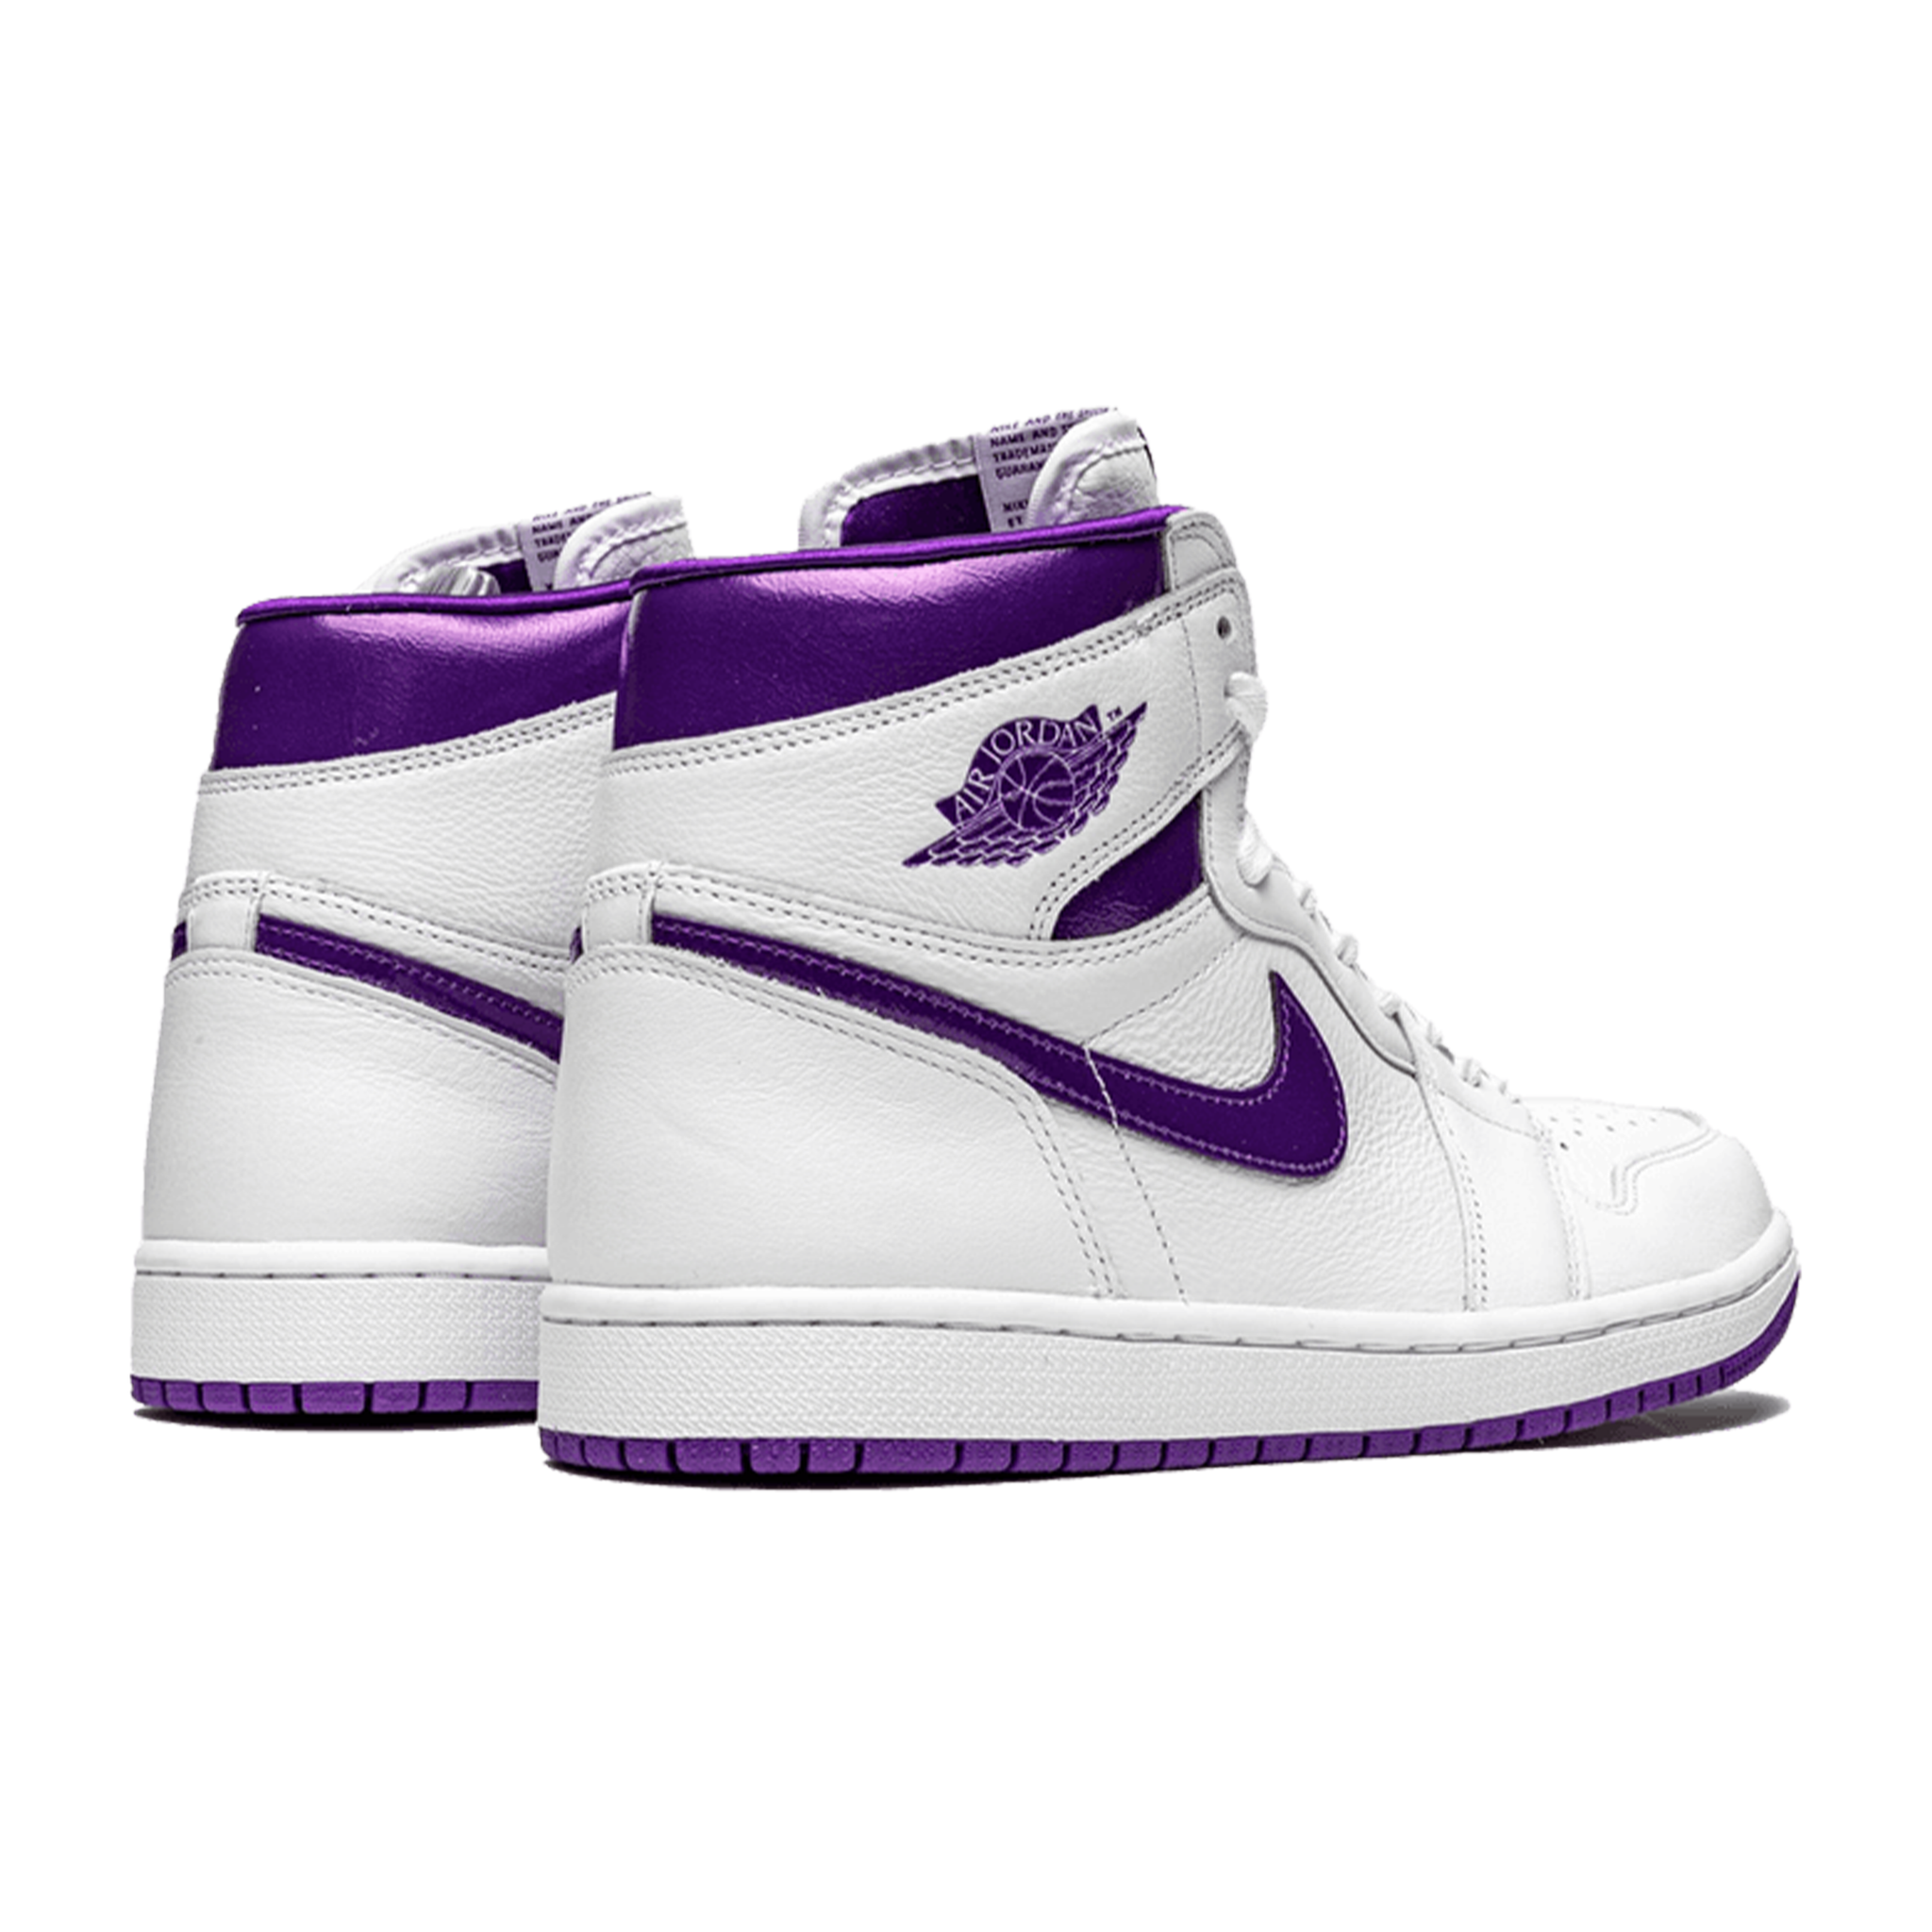 Air Jordan 1 High Retro "Court Purple" (W)